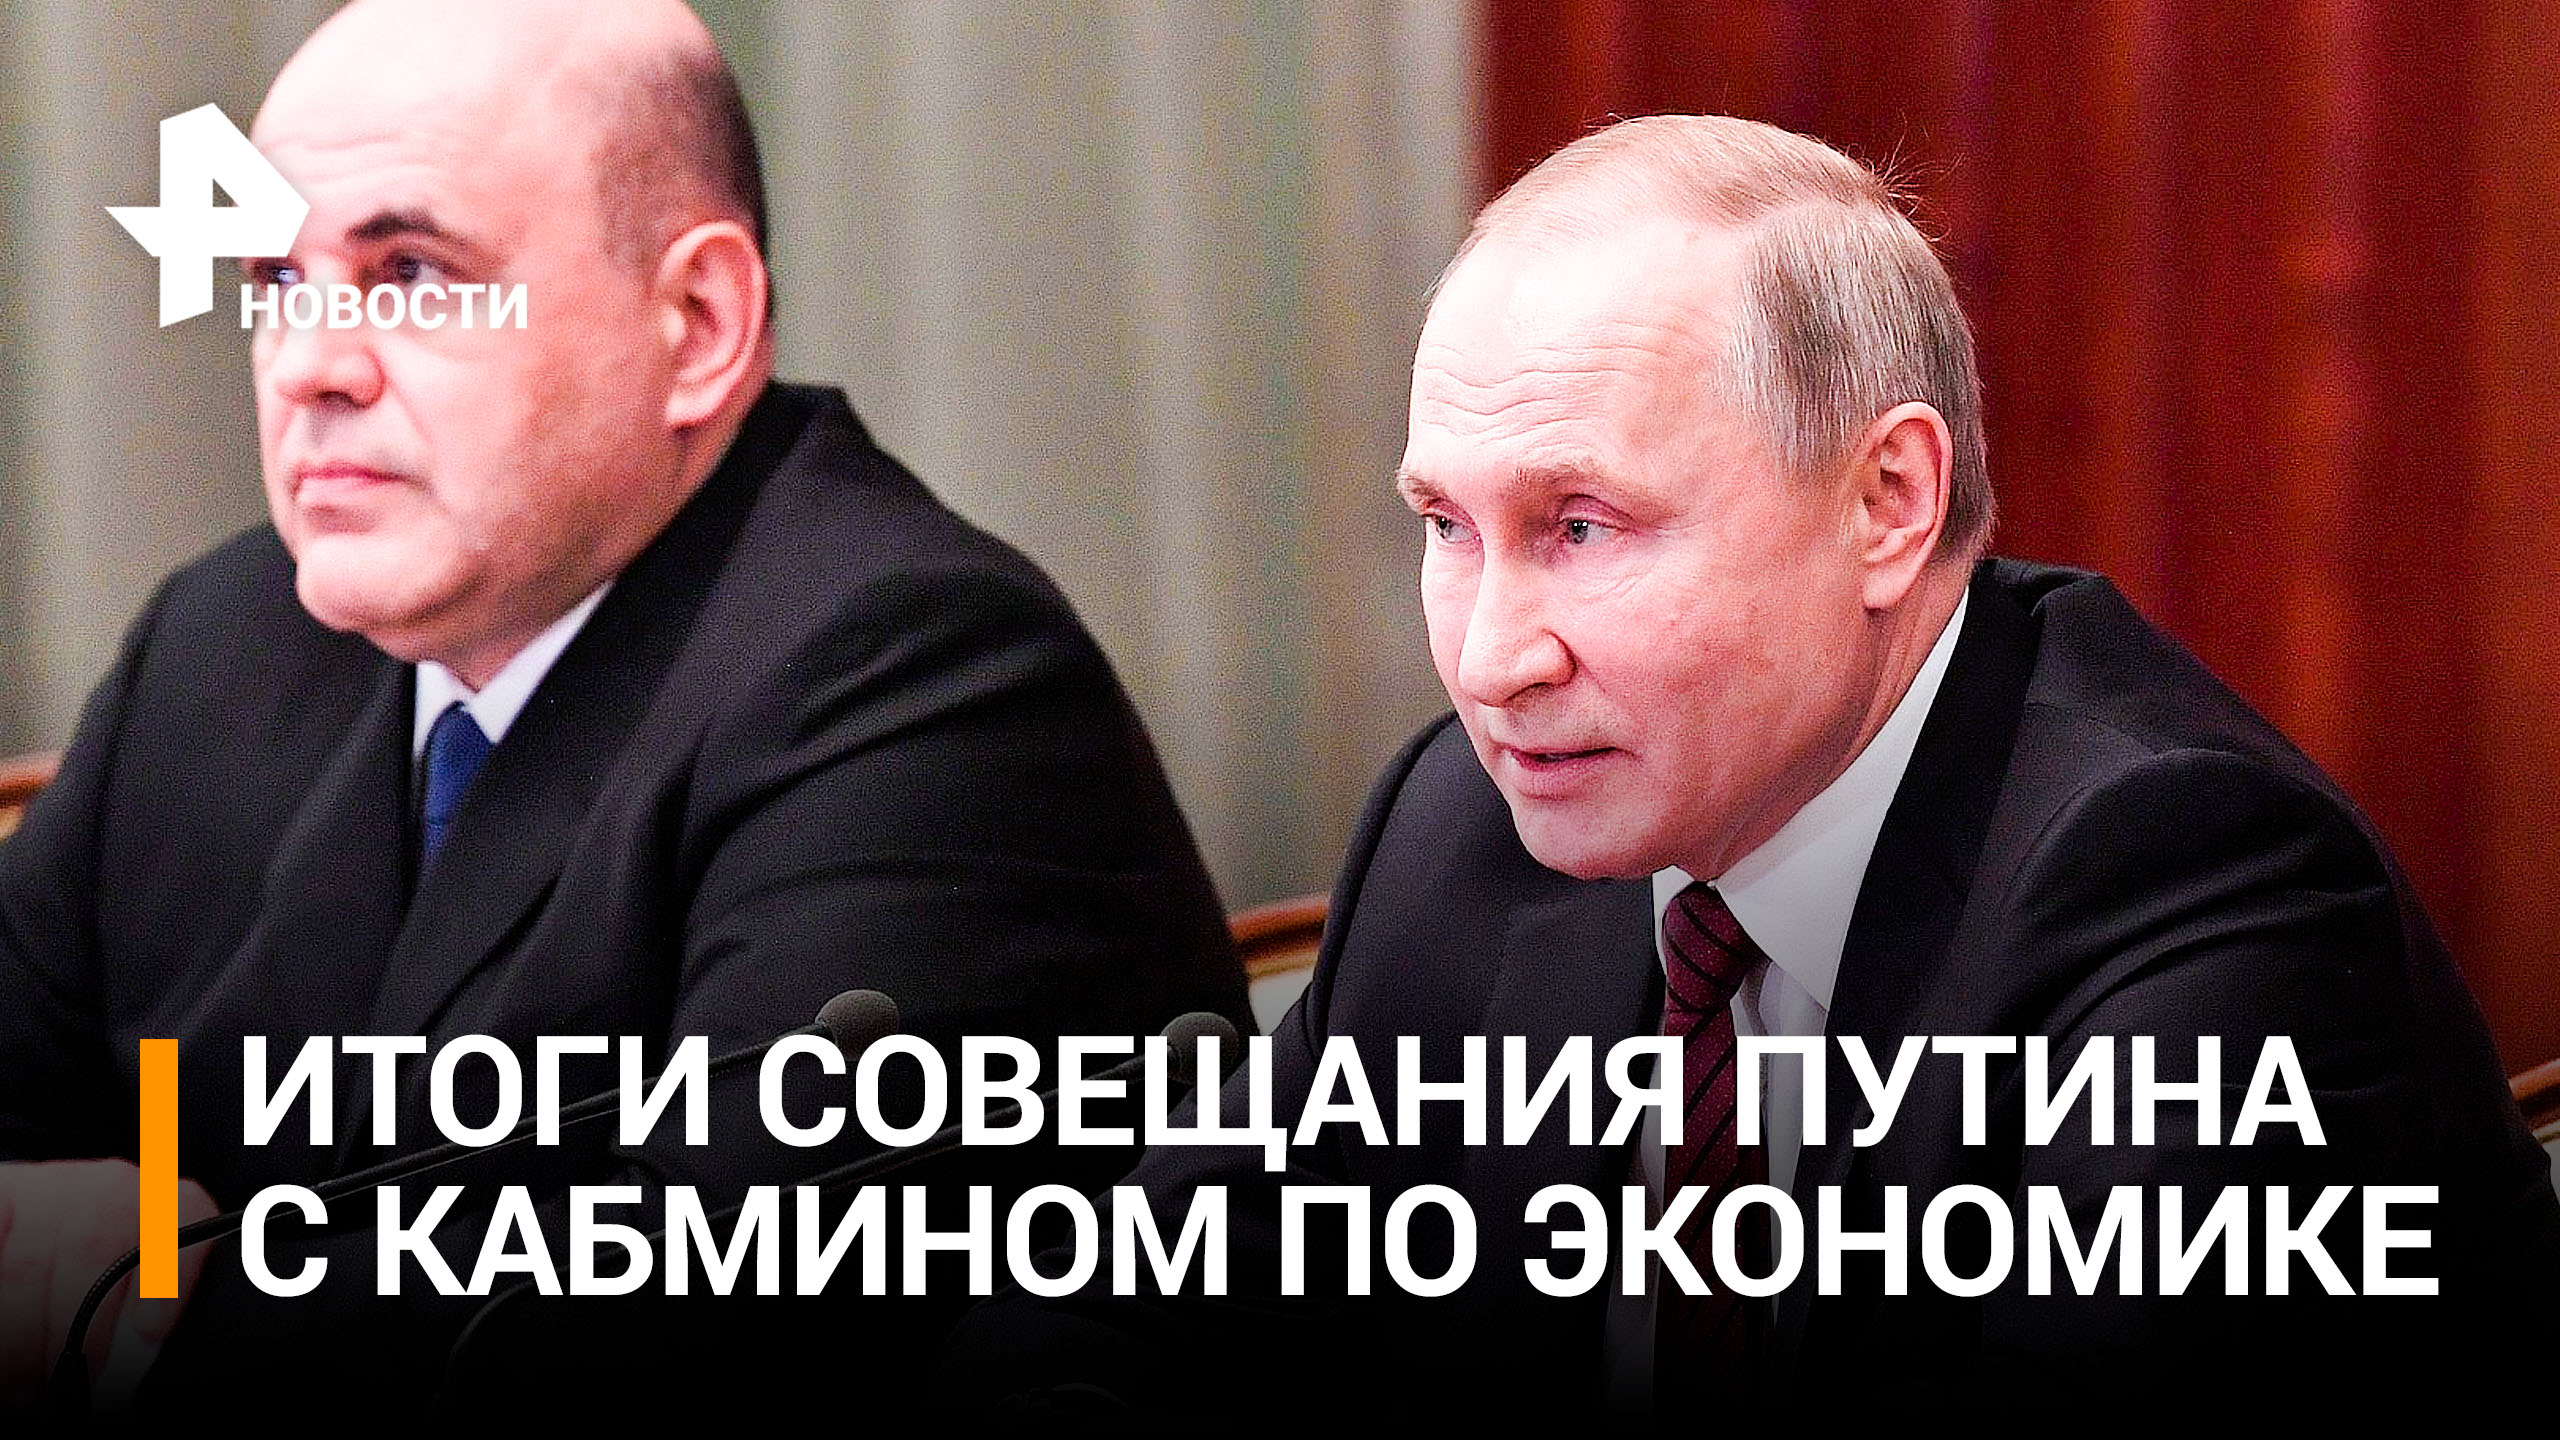 Кабмин по поручению Путина намерен привлечь новые инвестиции в Россию / РЕН Новости